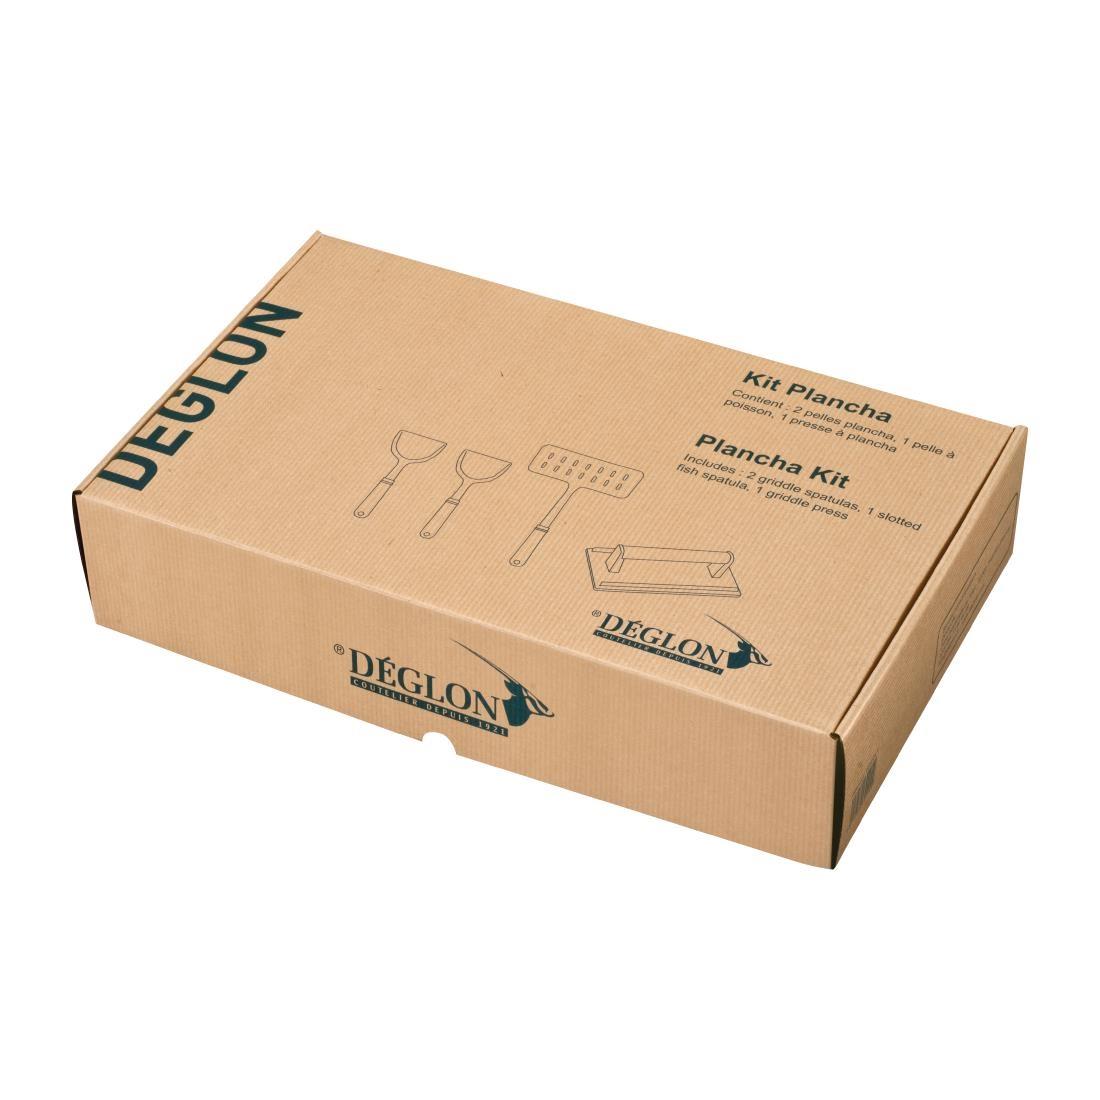 Deglon Plancha Kit (Pack of 4) - CR050  - 2